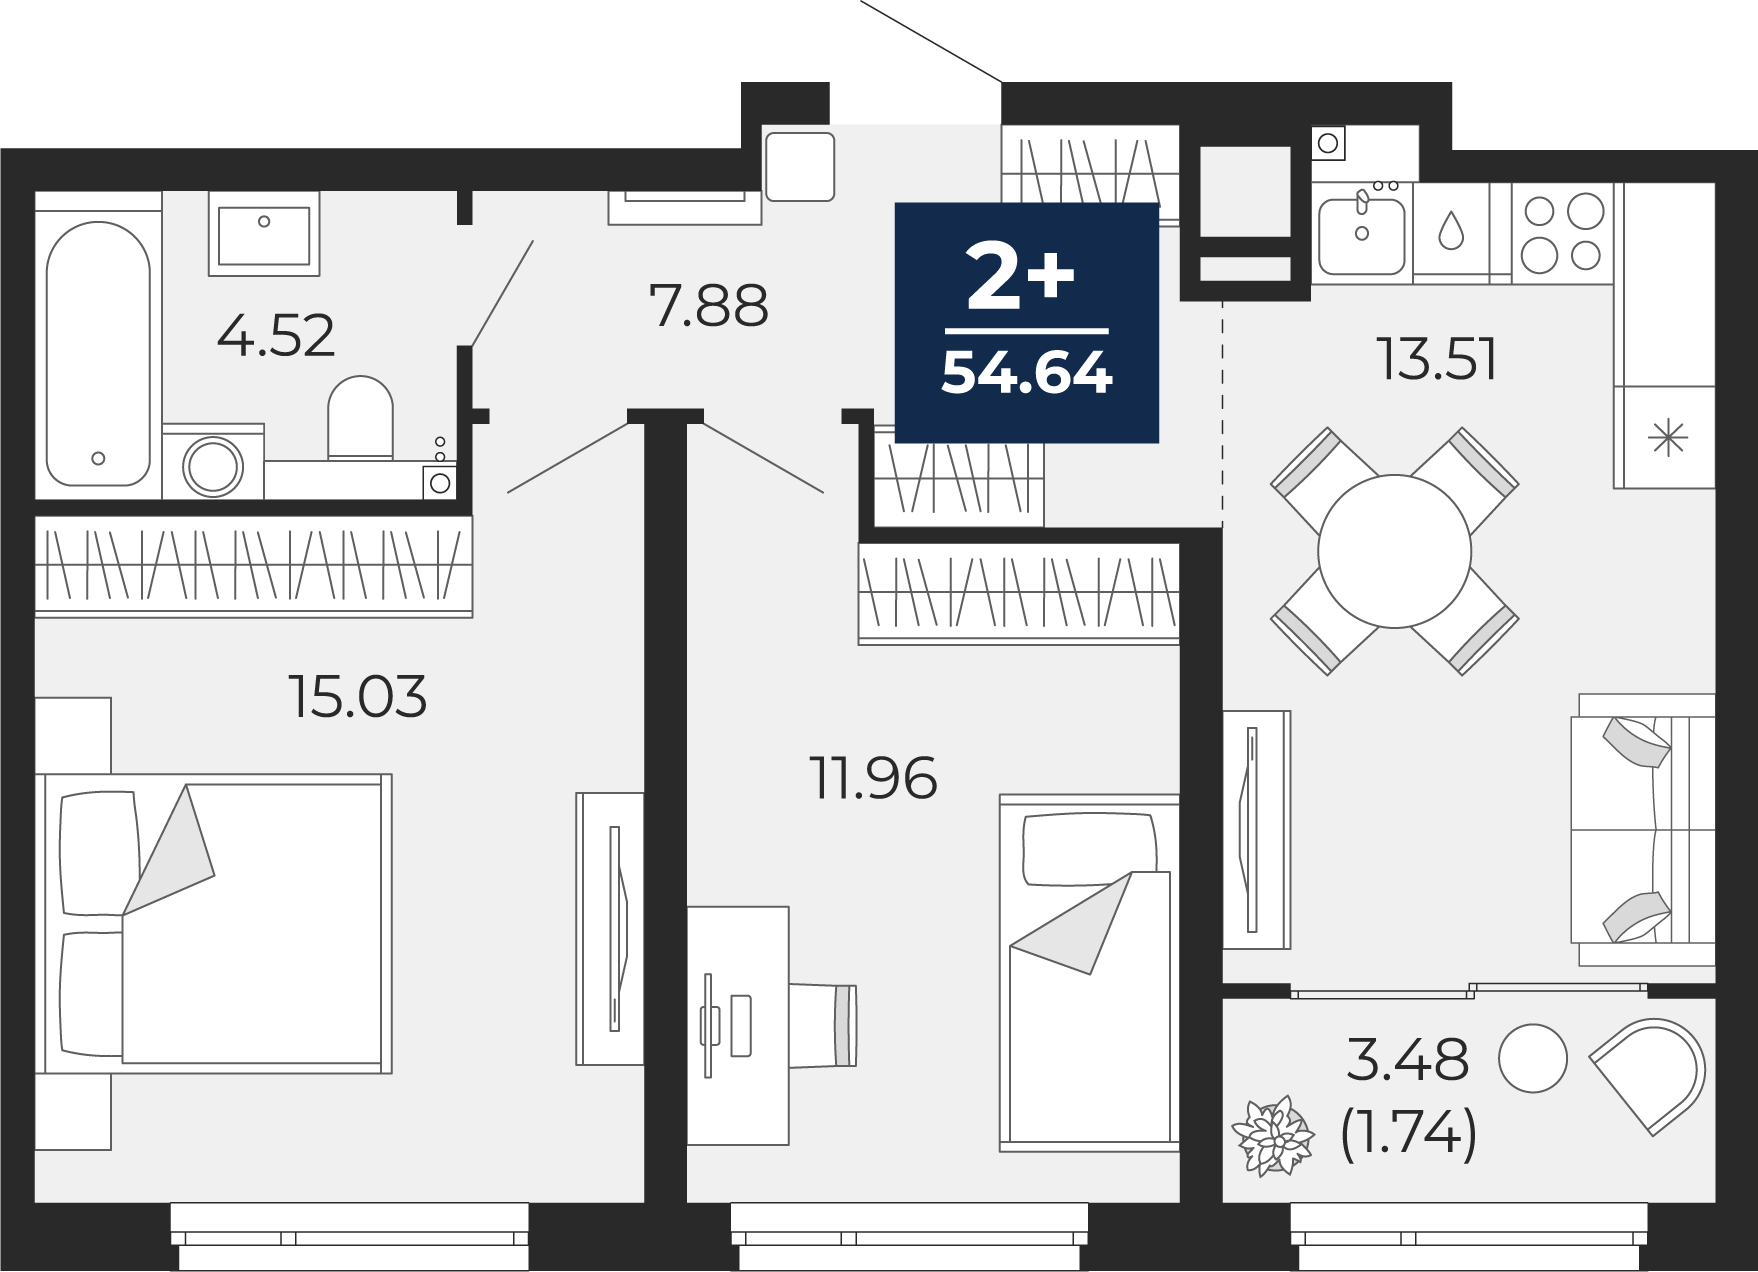 Квартира № 147, 2-комнатная, 54.64 кв. м, 4 этаж